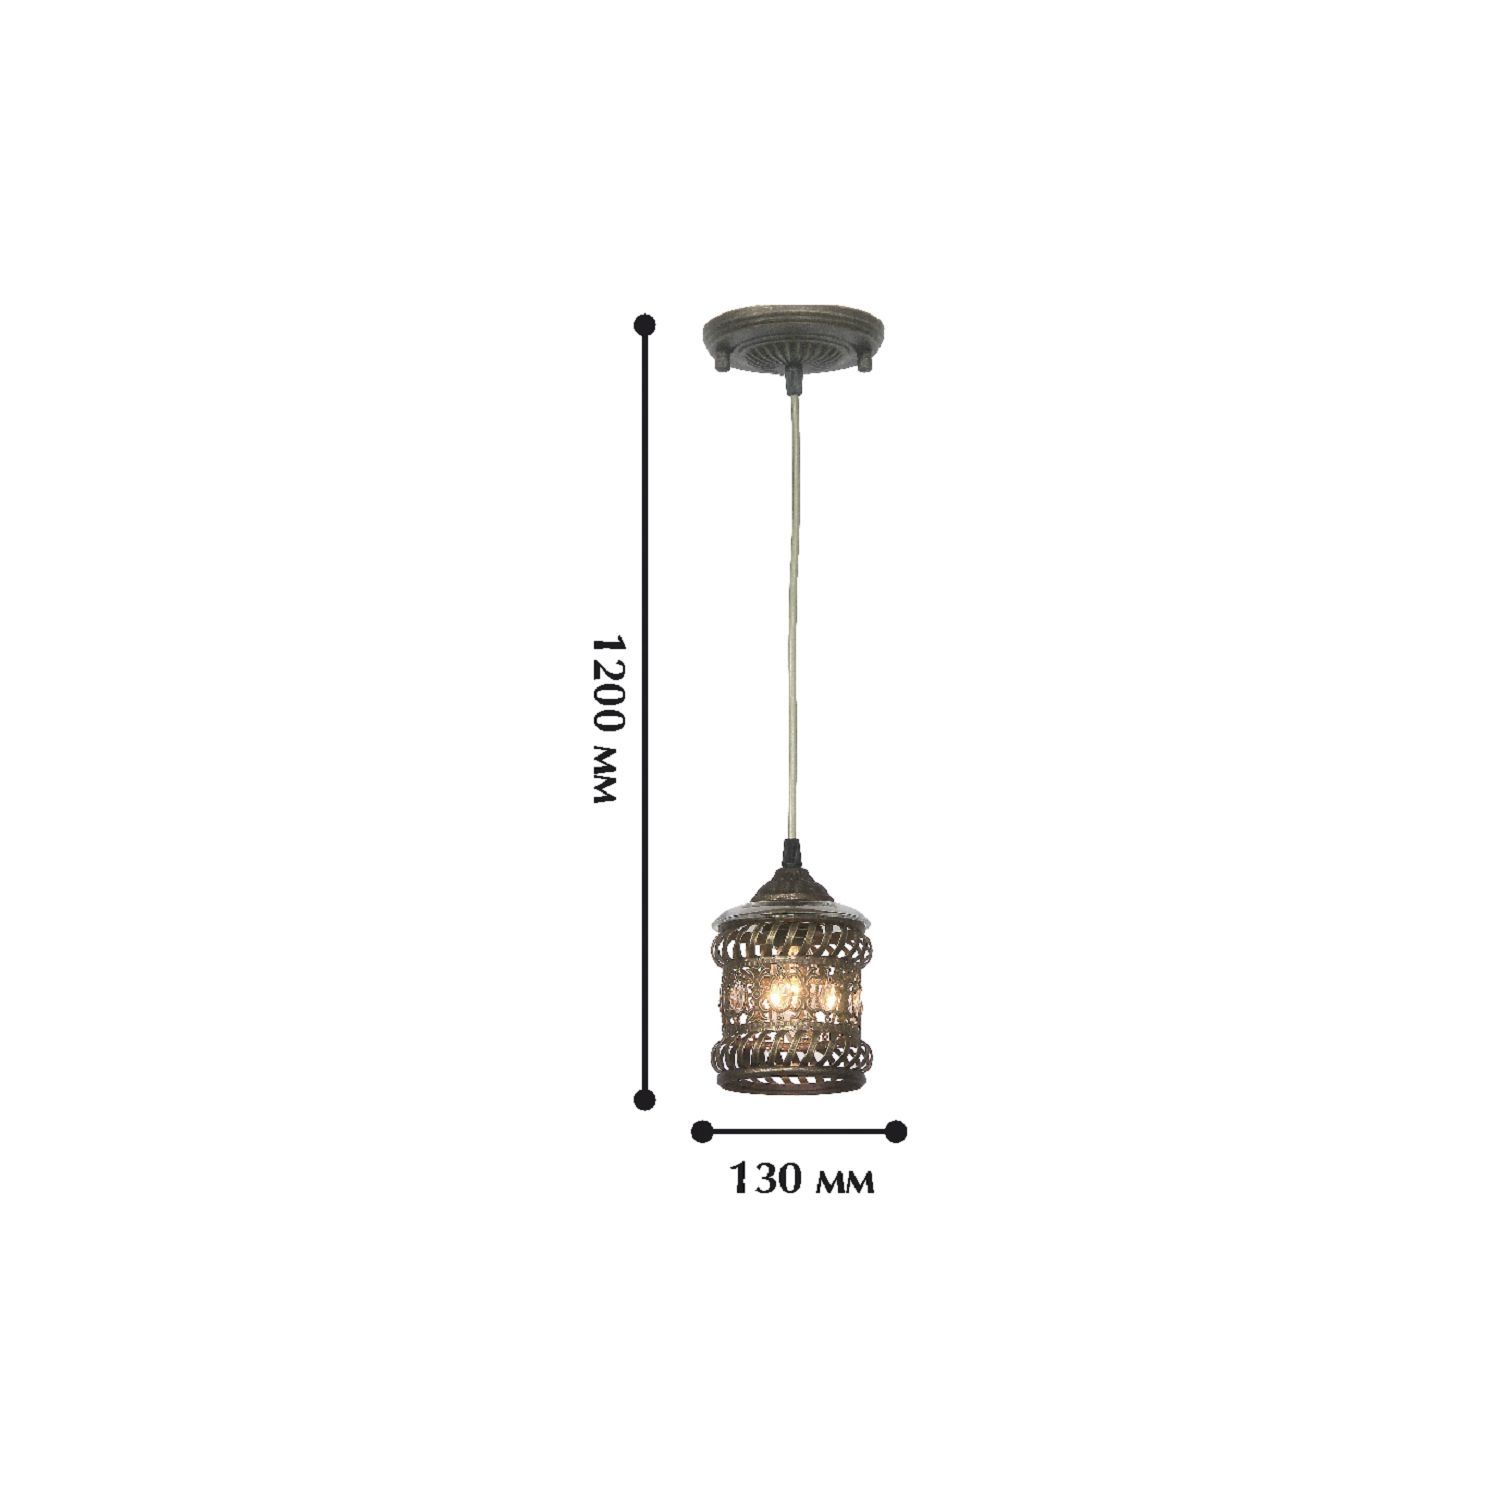 Подвесной светильник Favourite Arabia 1621-1P (Германия) | купить 1621-1P  по самой выгодной цене, отзывы (1)